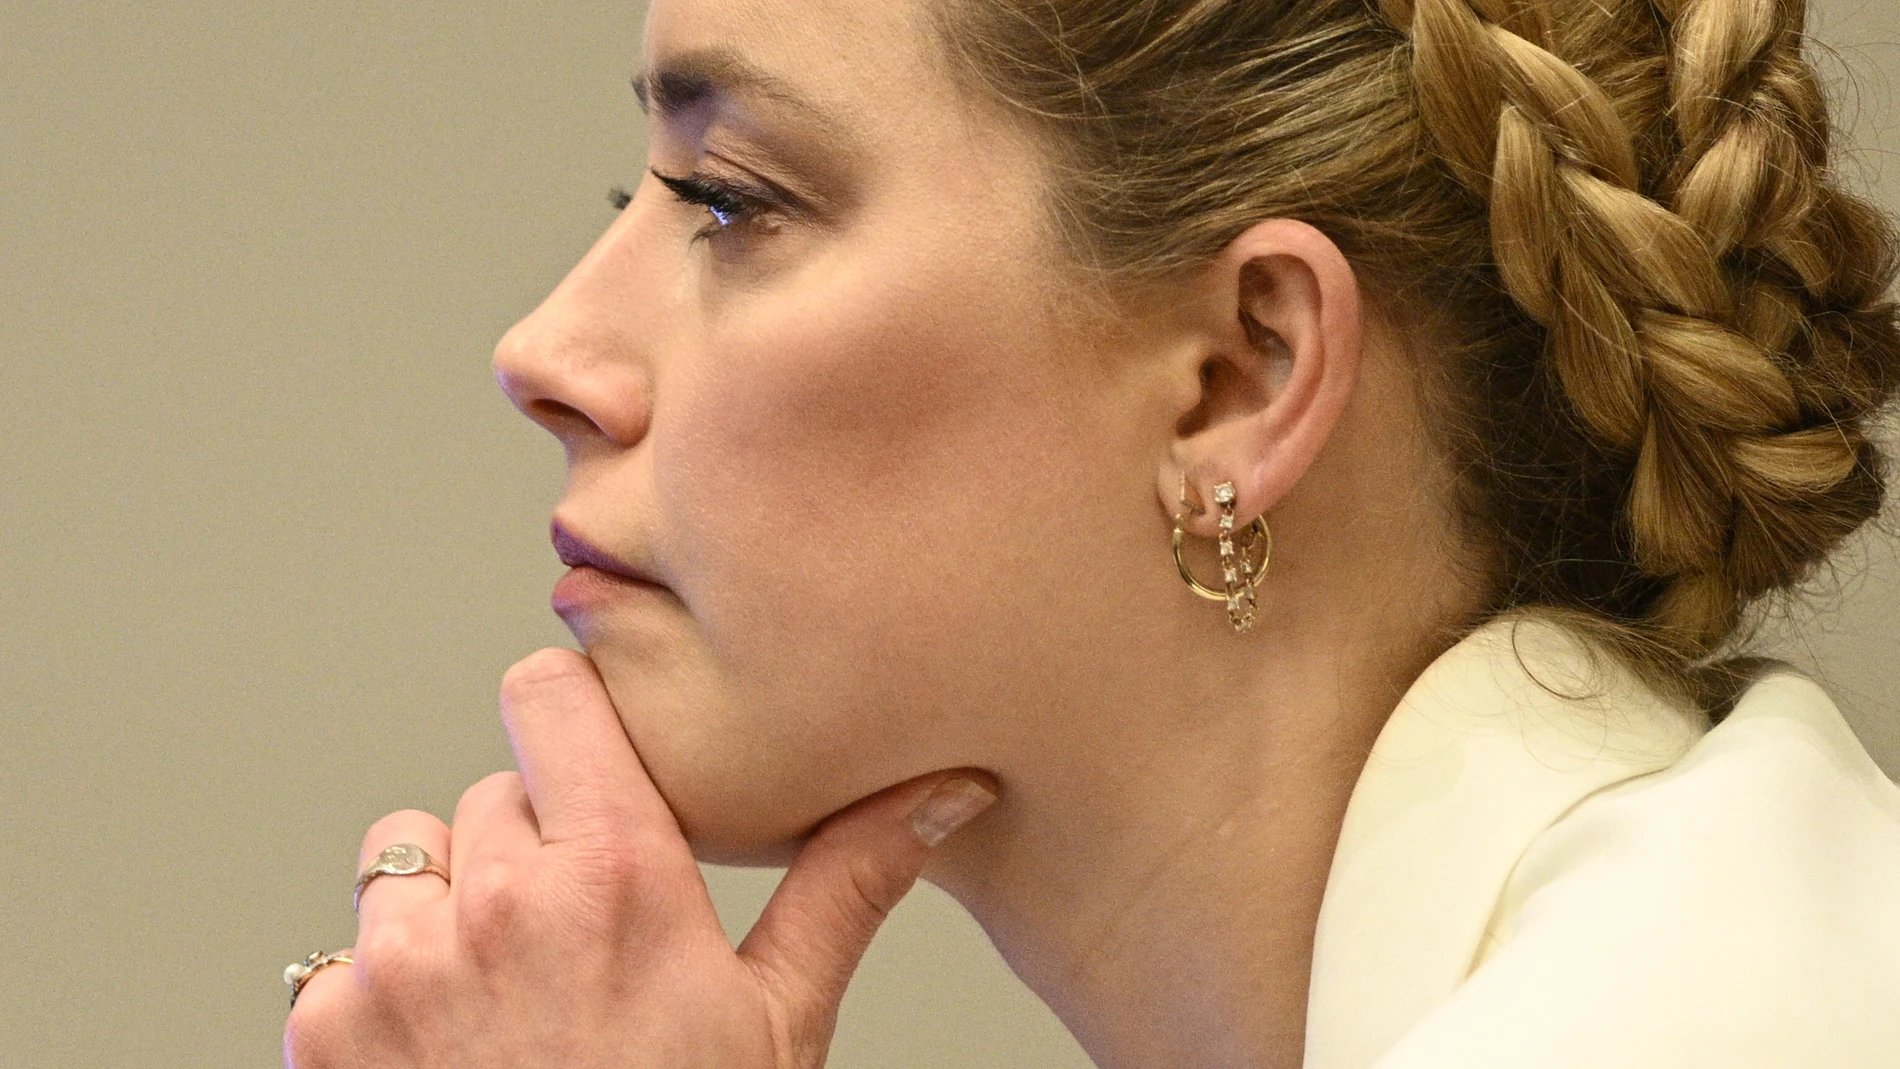 La Policía no consideró a la actriz Amber Heard como víctima de violencia  doméstica